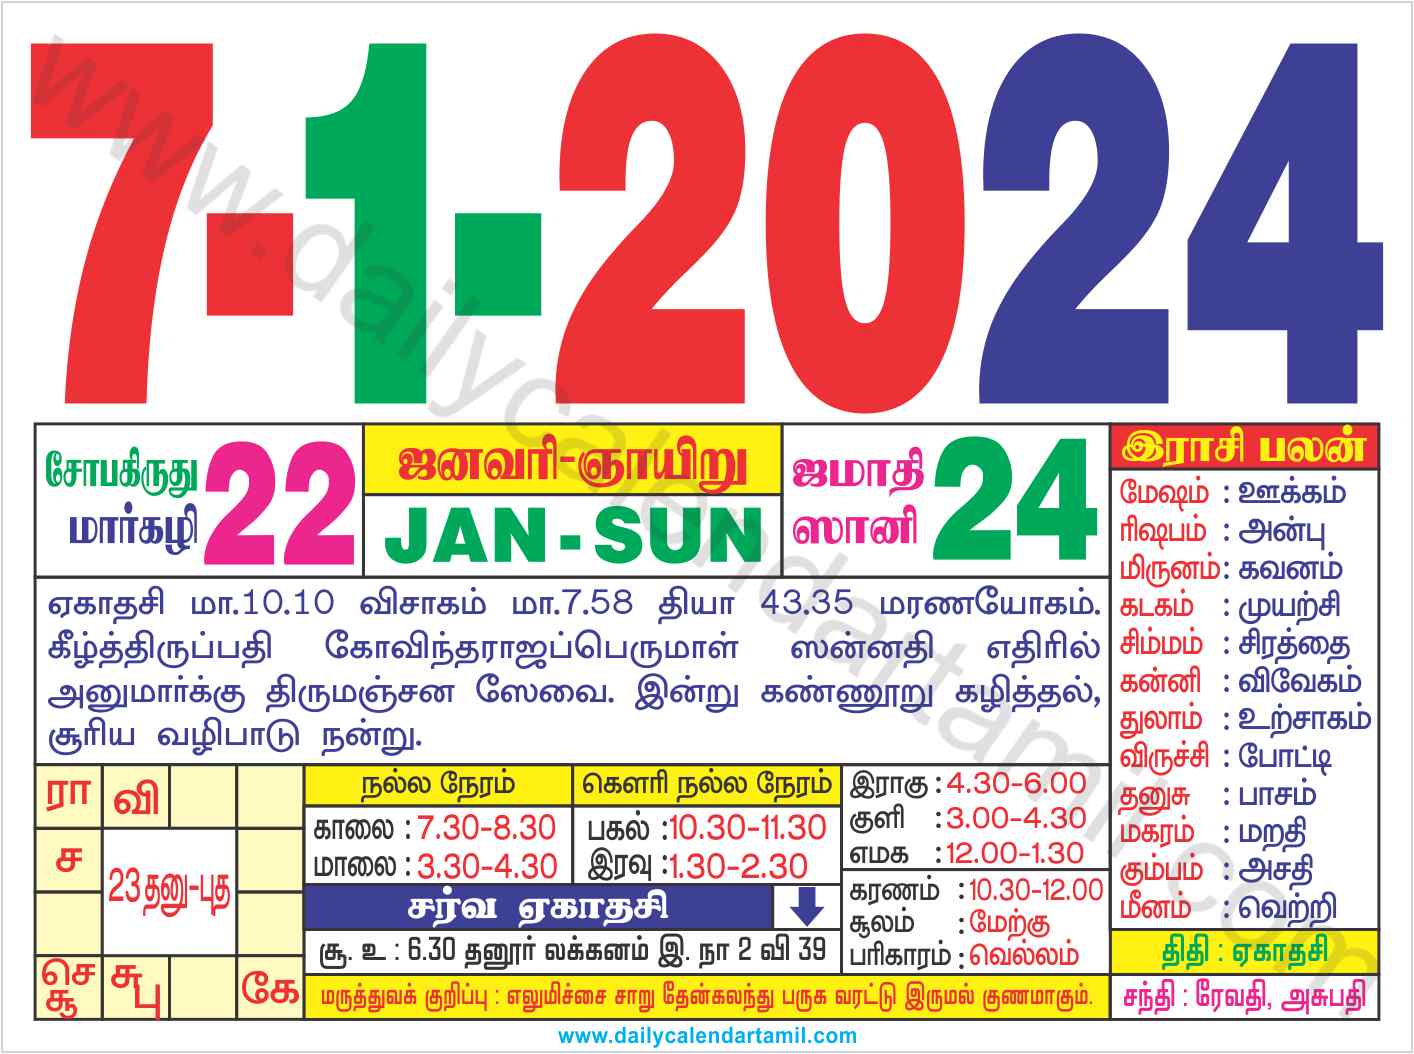 Tamil Daily Sheet Calendar 2022 Customize and Print